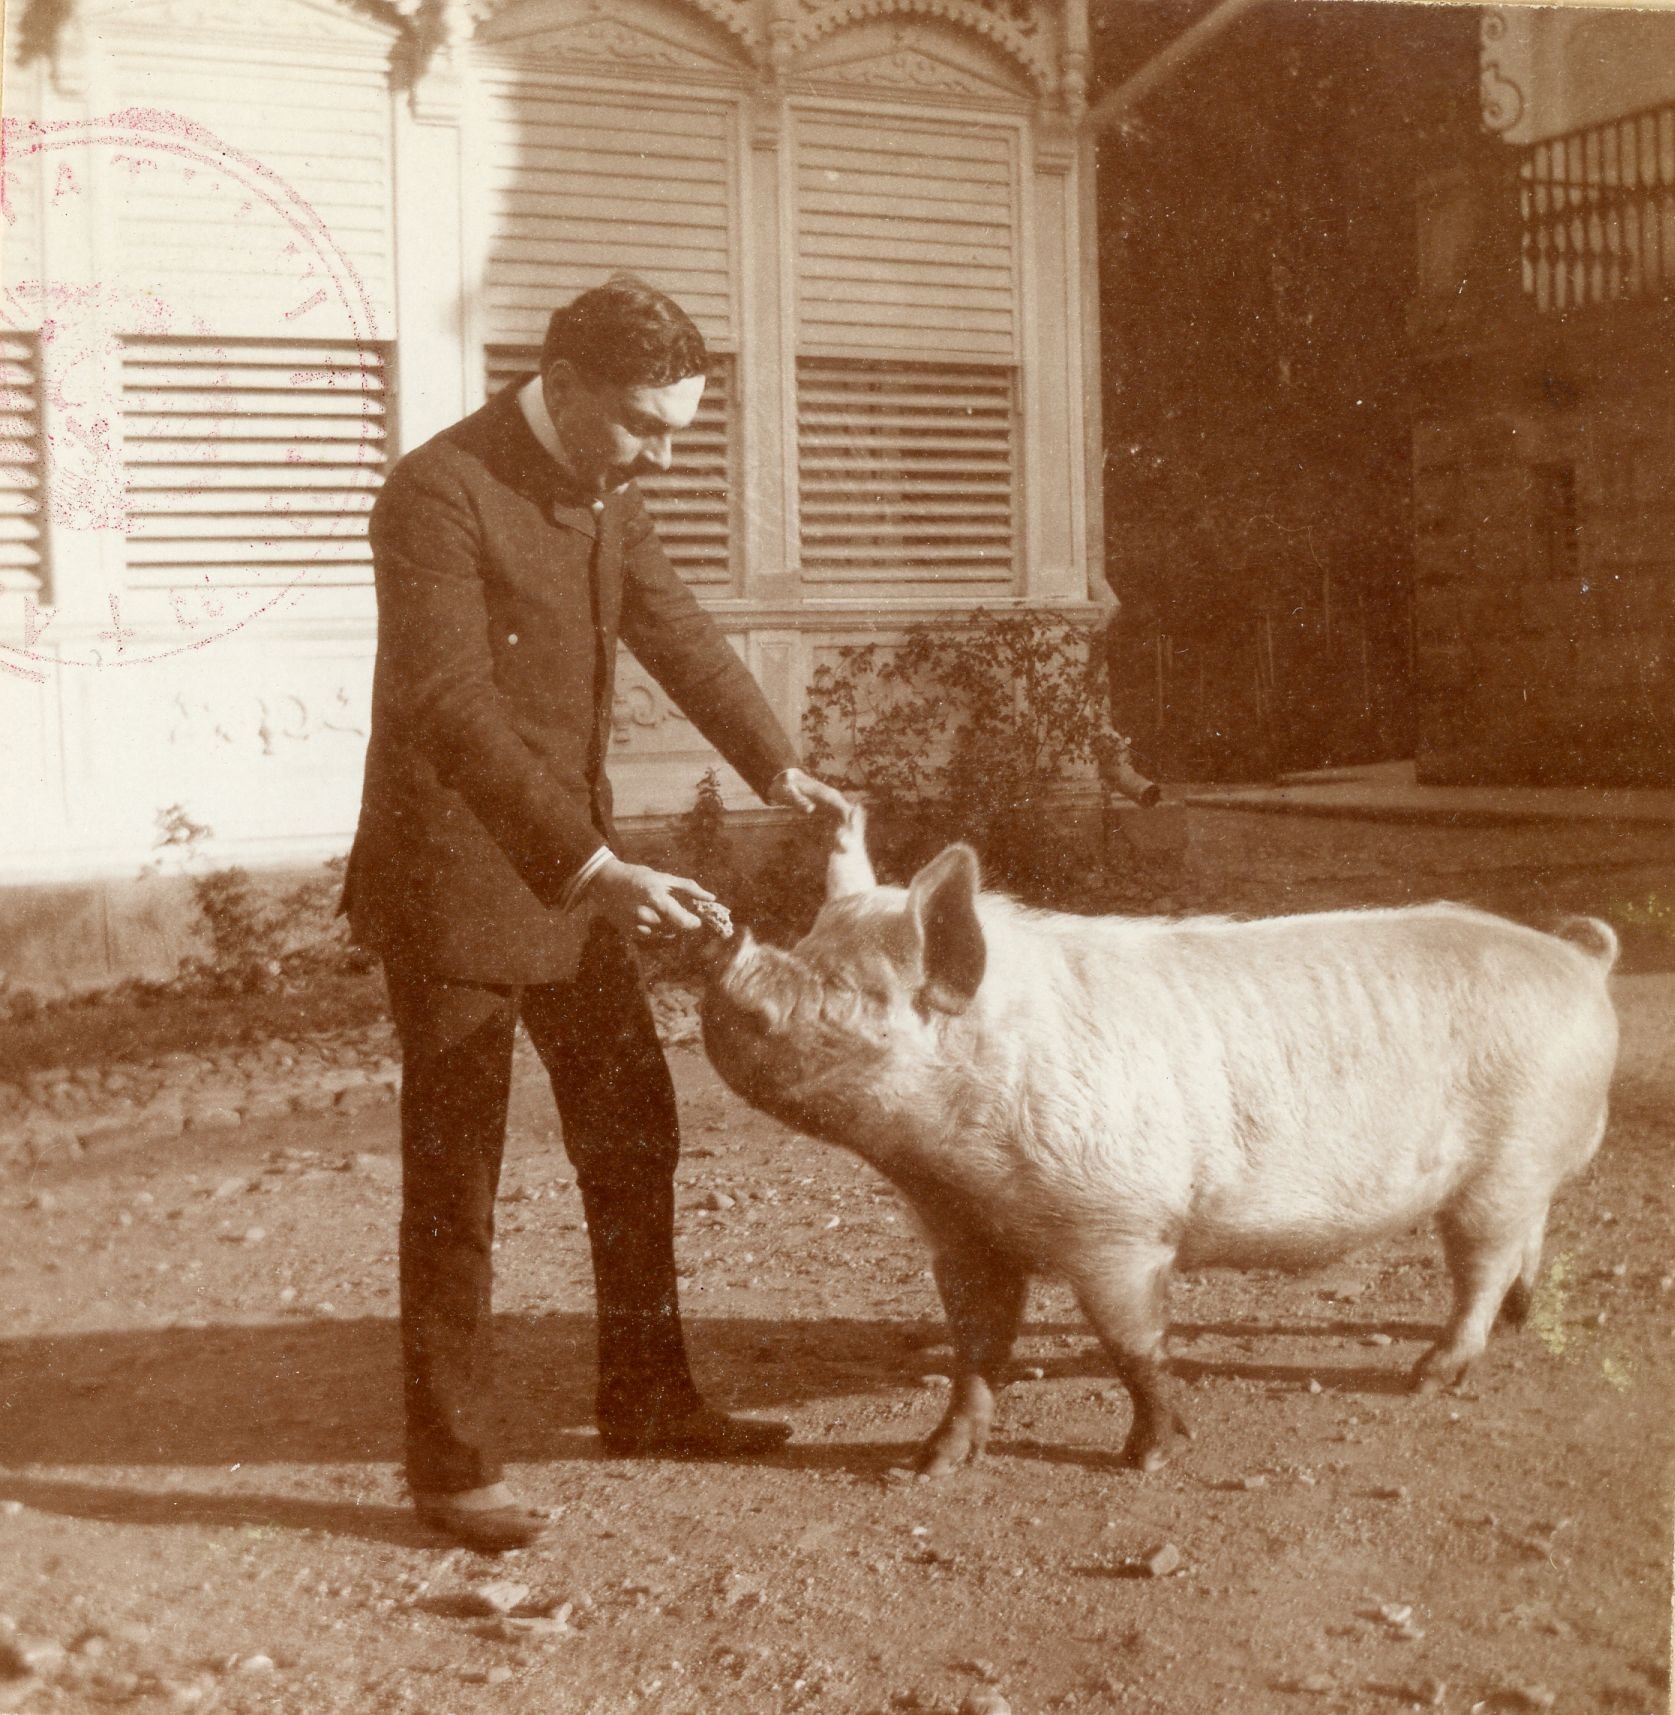 Prince Barbu Știrbey feeding a pig (and enjoying himself) at Arcuș castle. BU-FD-01073-6-00090-112